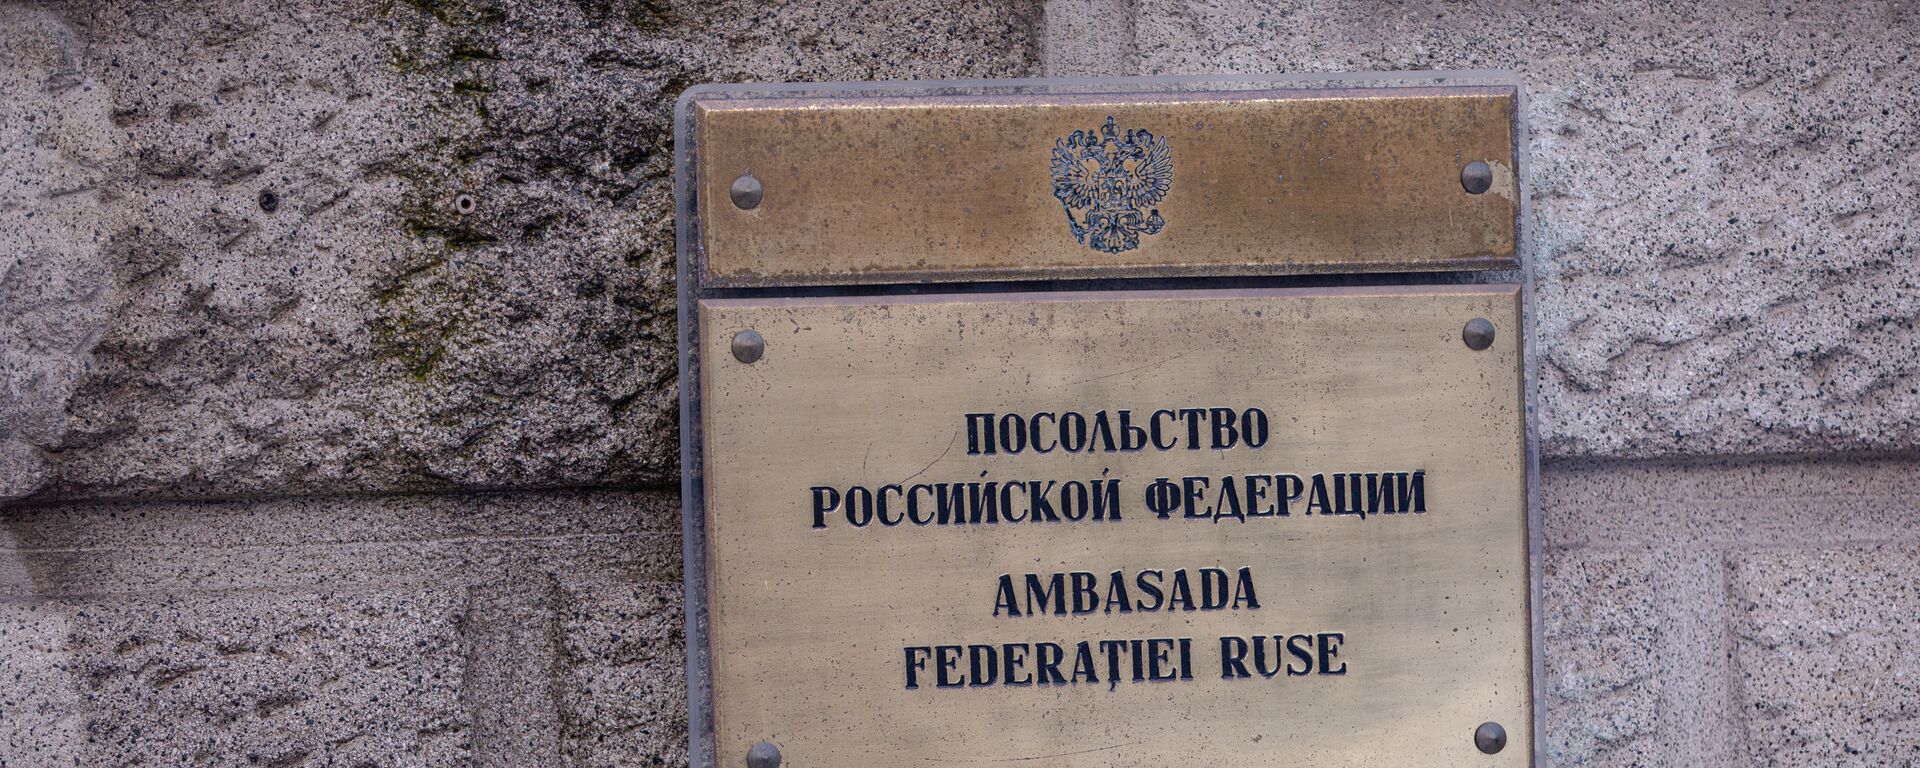 Ambasada federației ruse în București - Sputnik Молдова, 1920, 26.04.2021